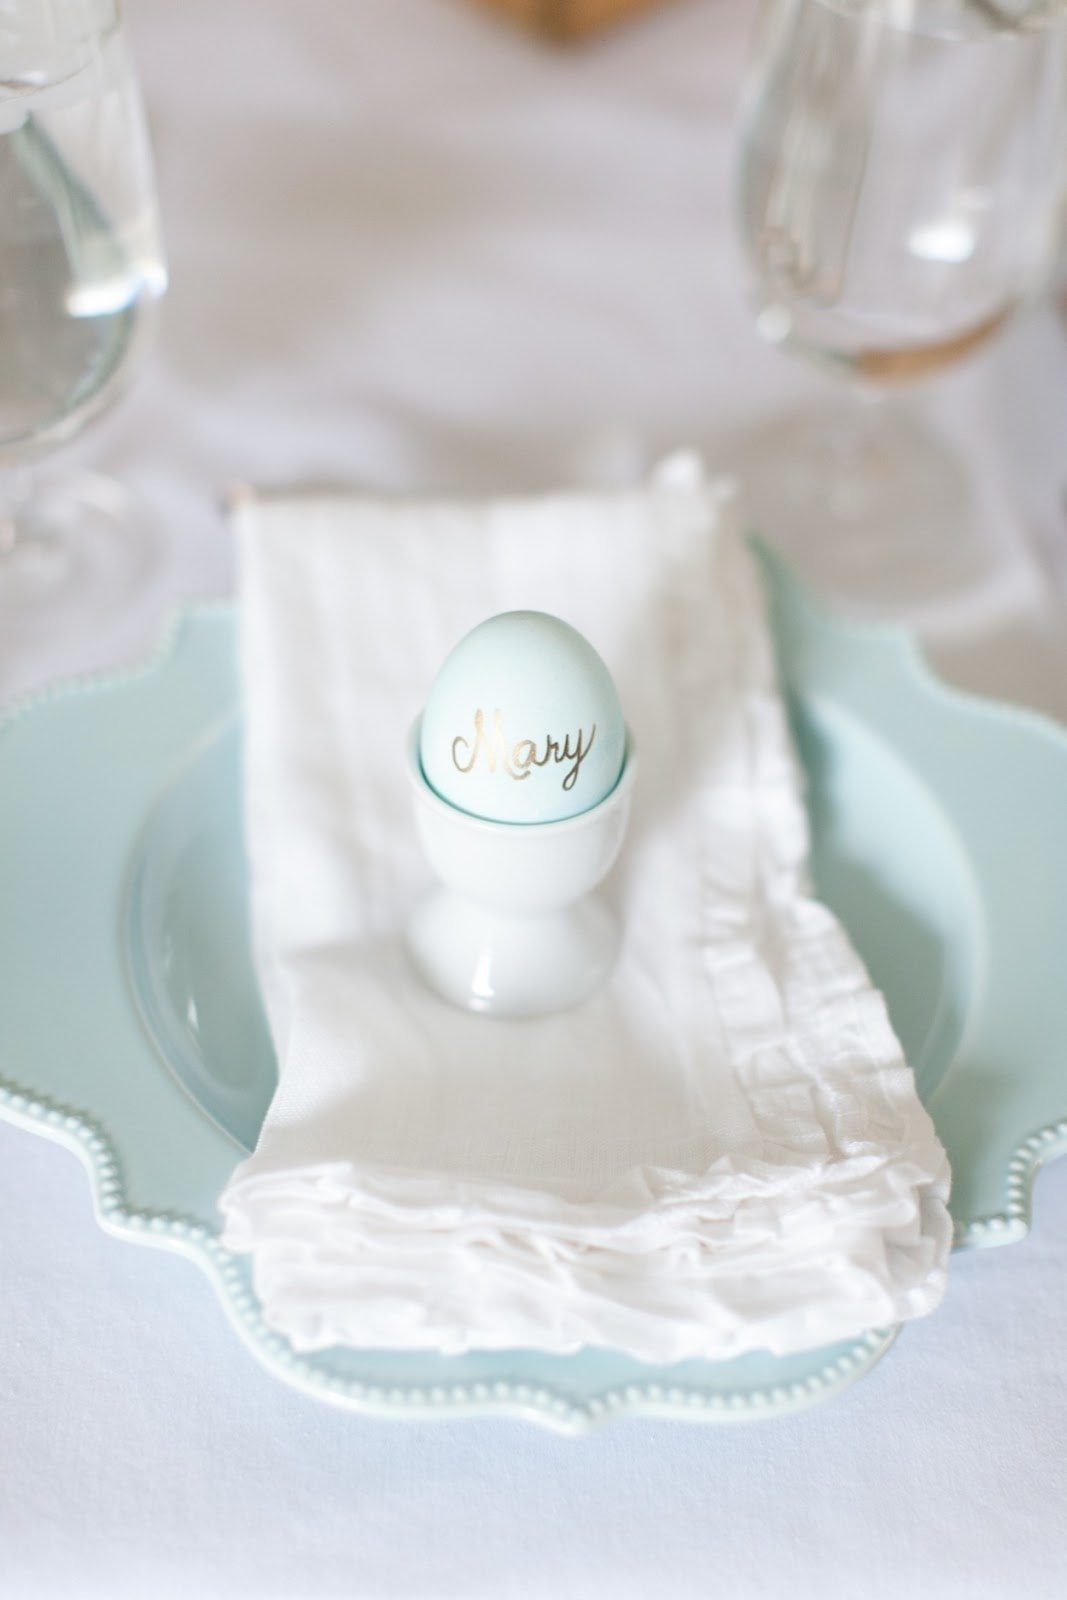 复活节的餐具，蛋杯里有一个鸡蛋，上面写着名字